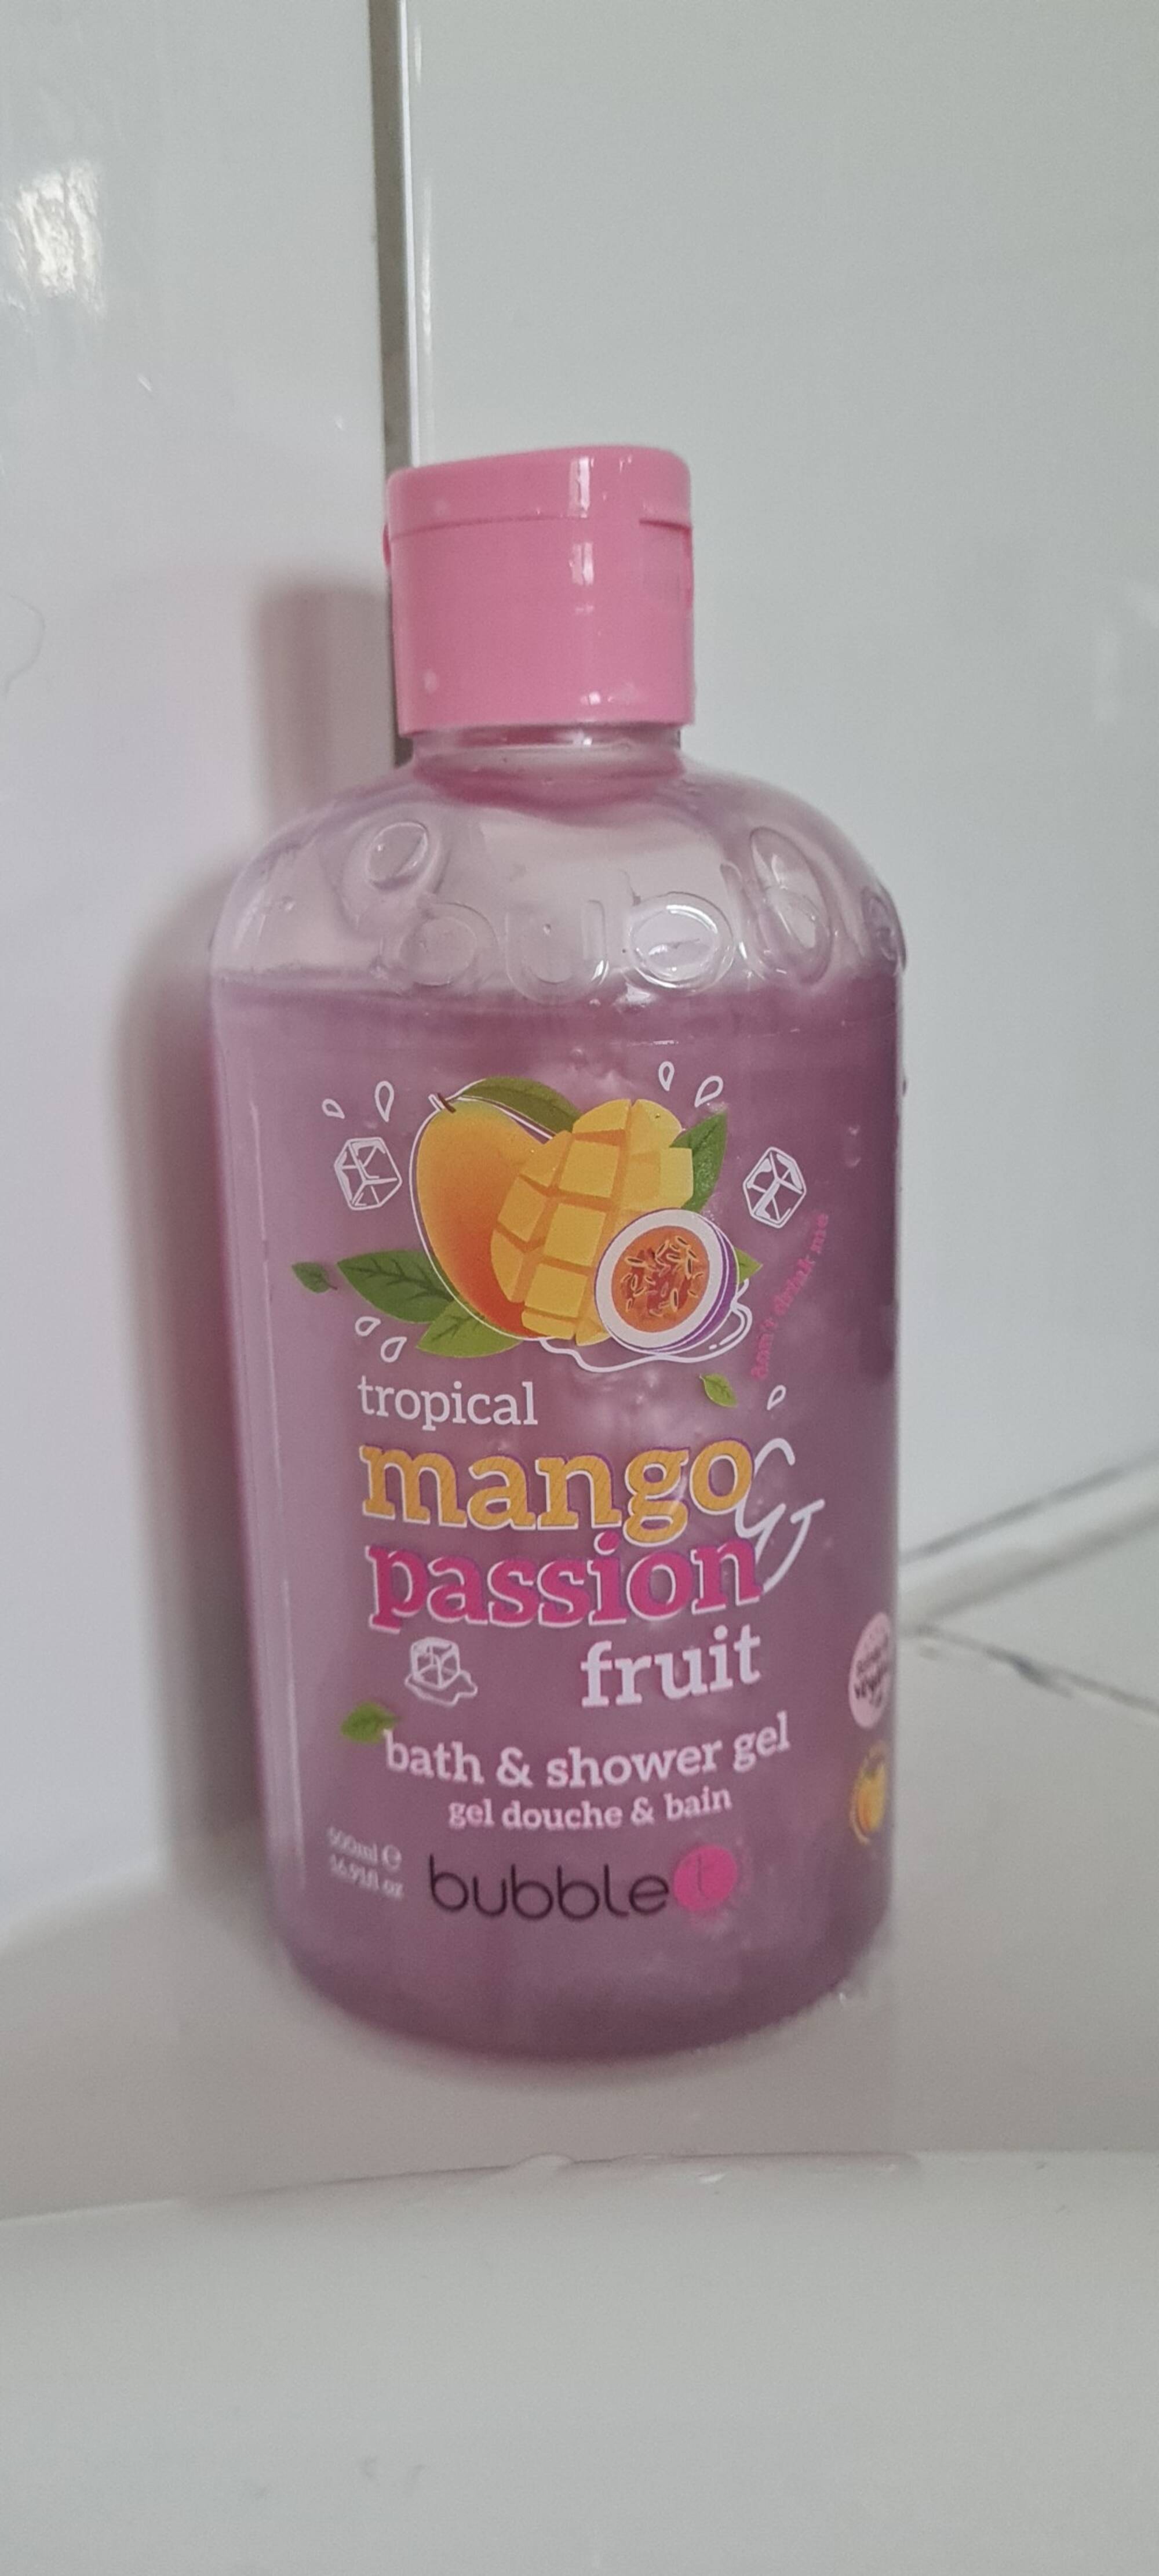 BUBBLE T - Tropical mango passion - Gel douche & bain